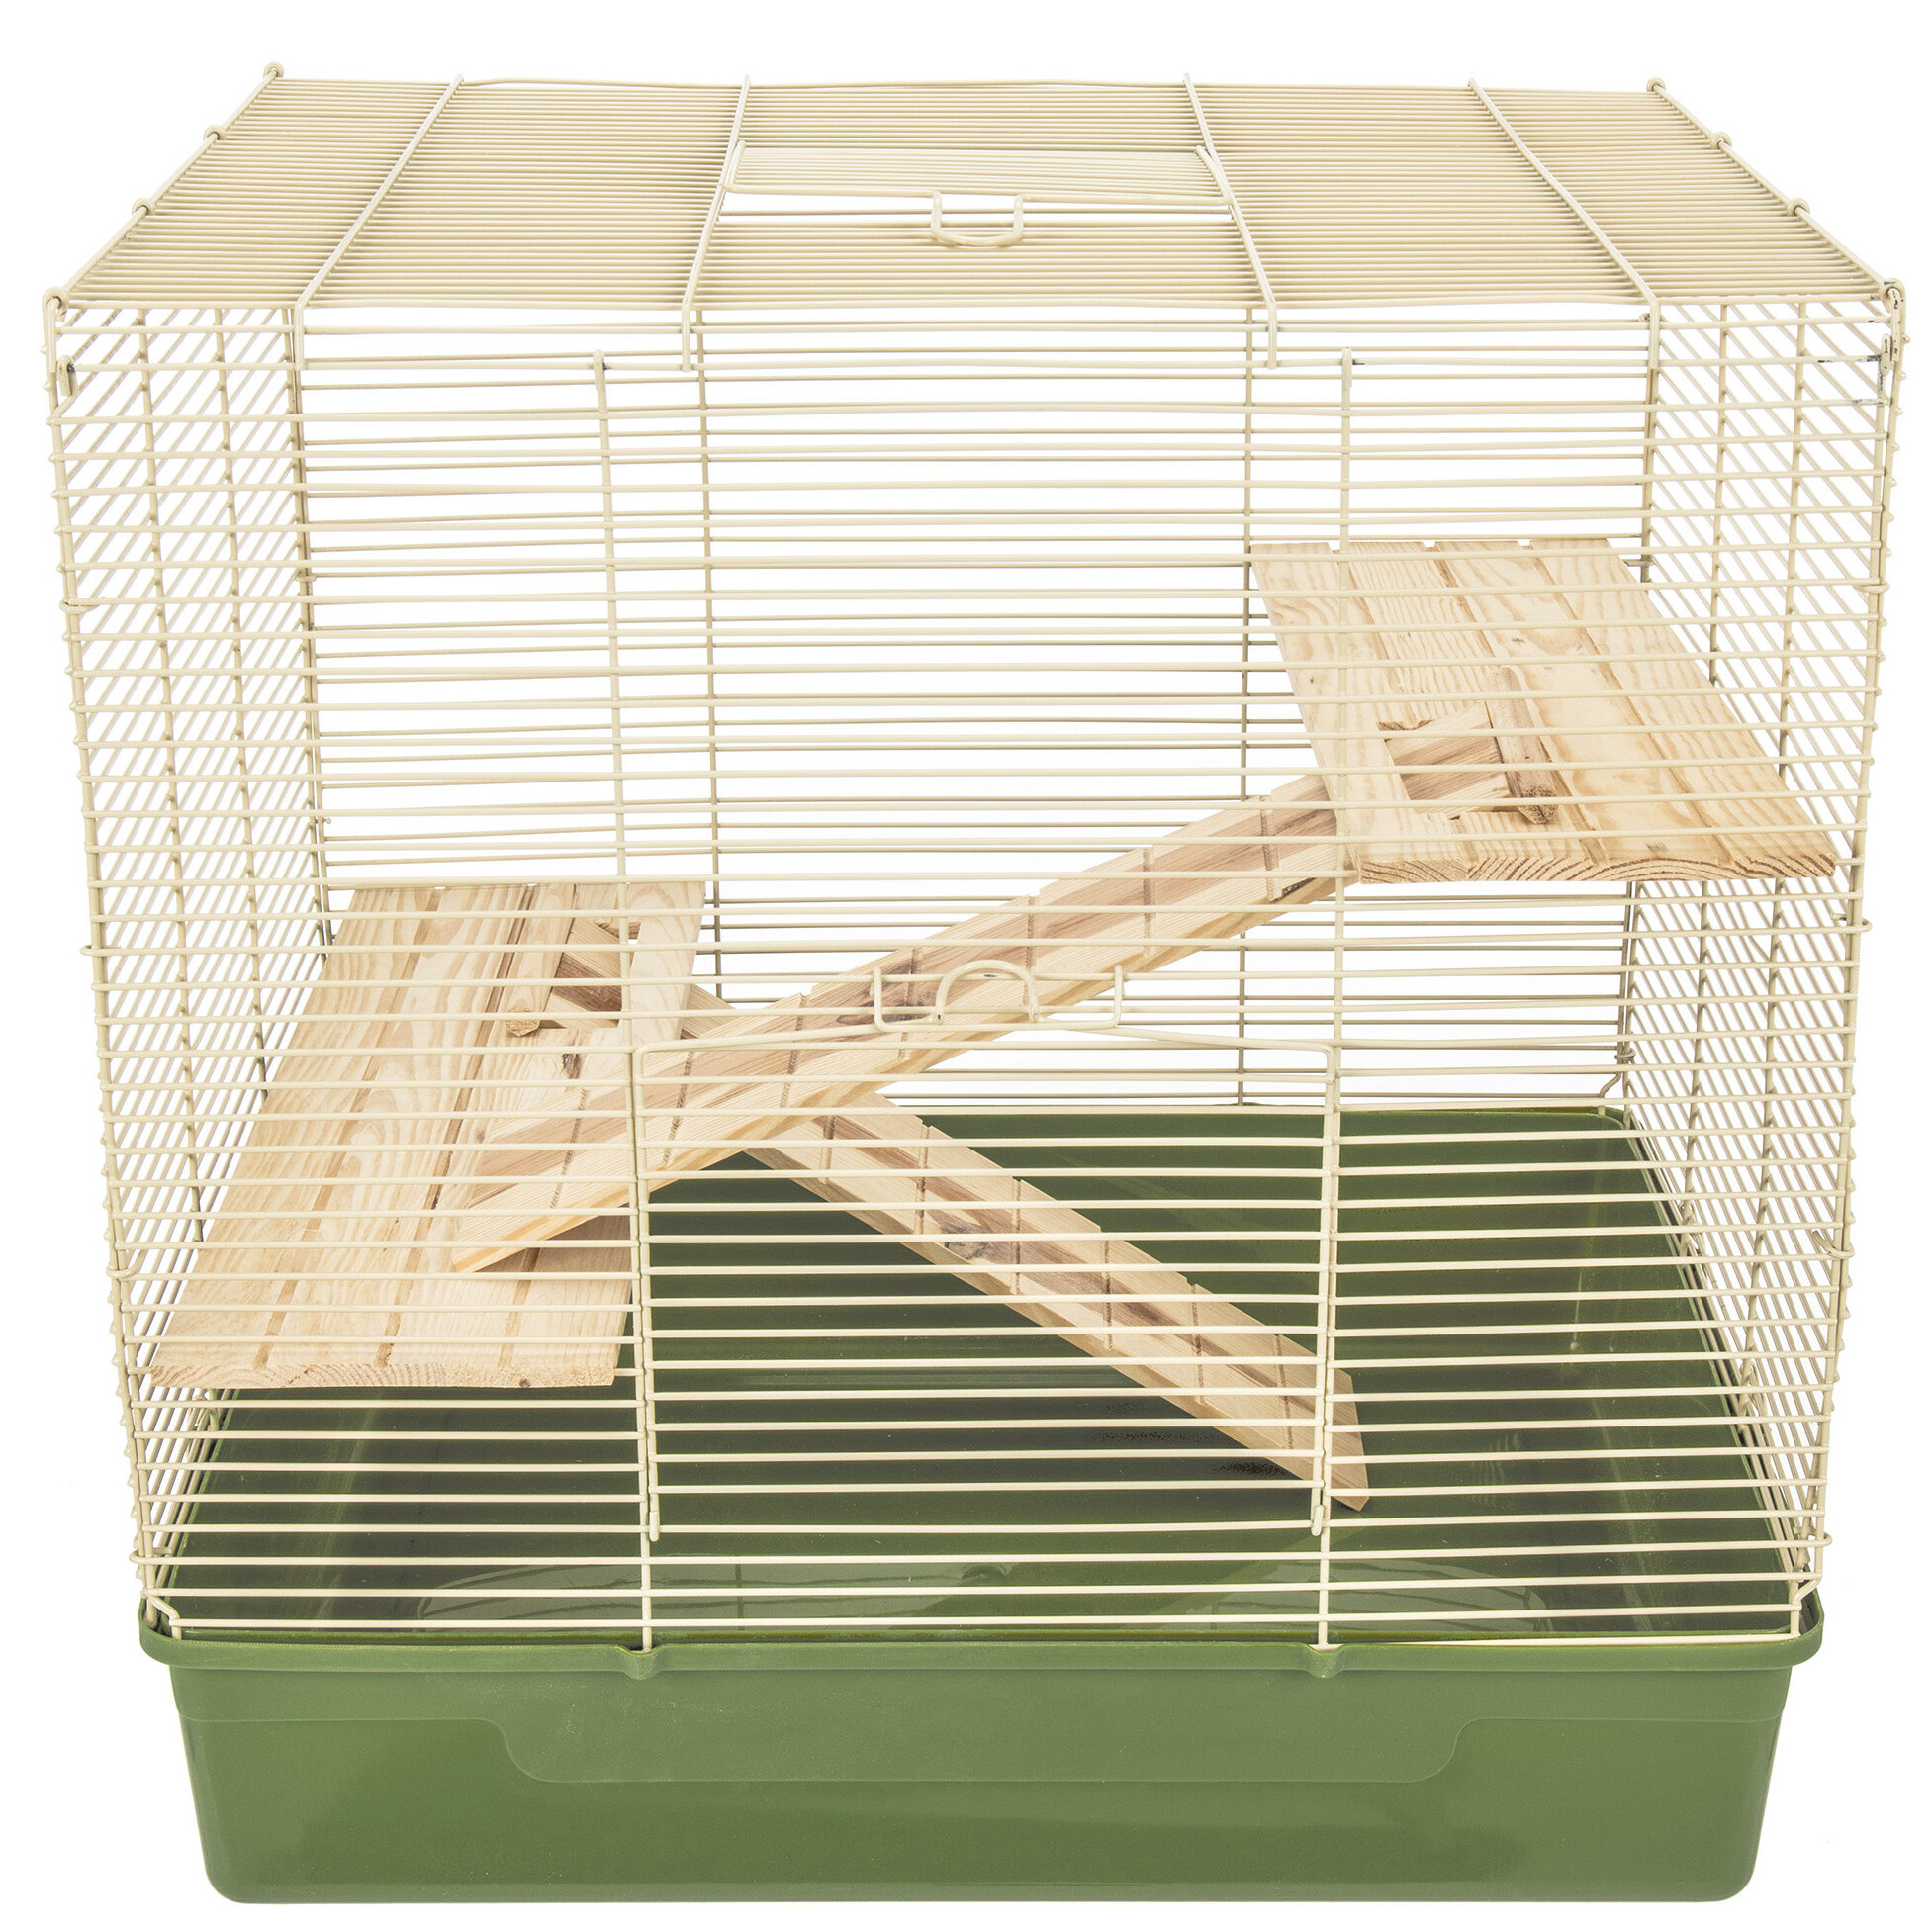 2 level rat cage